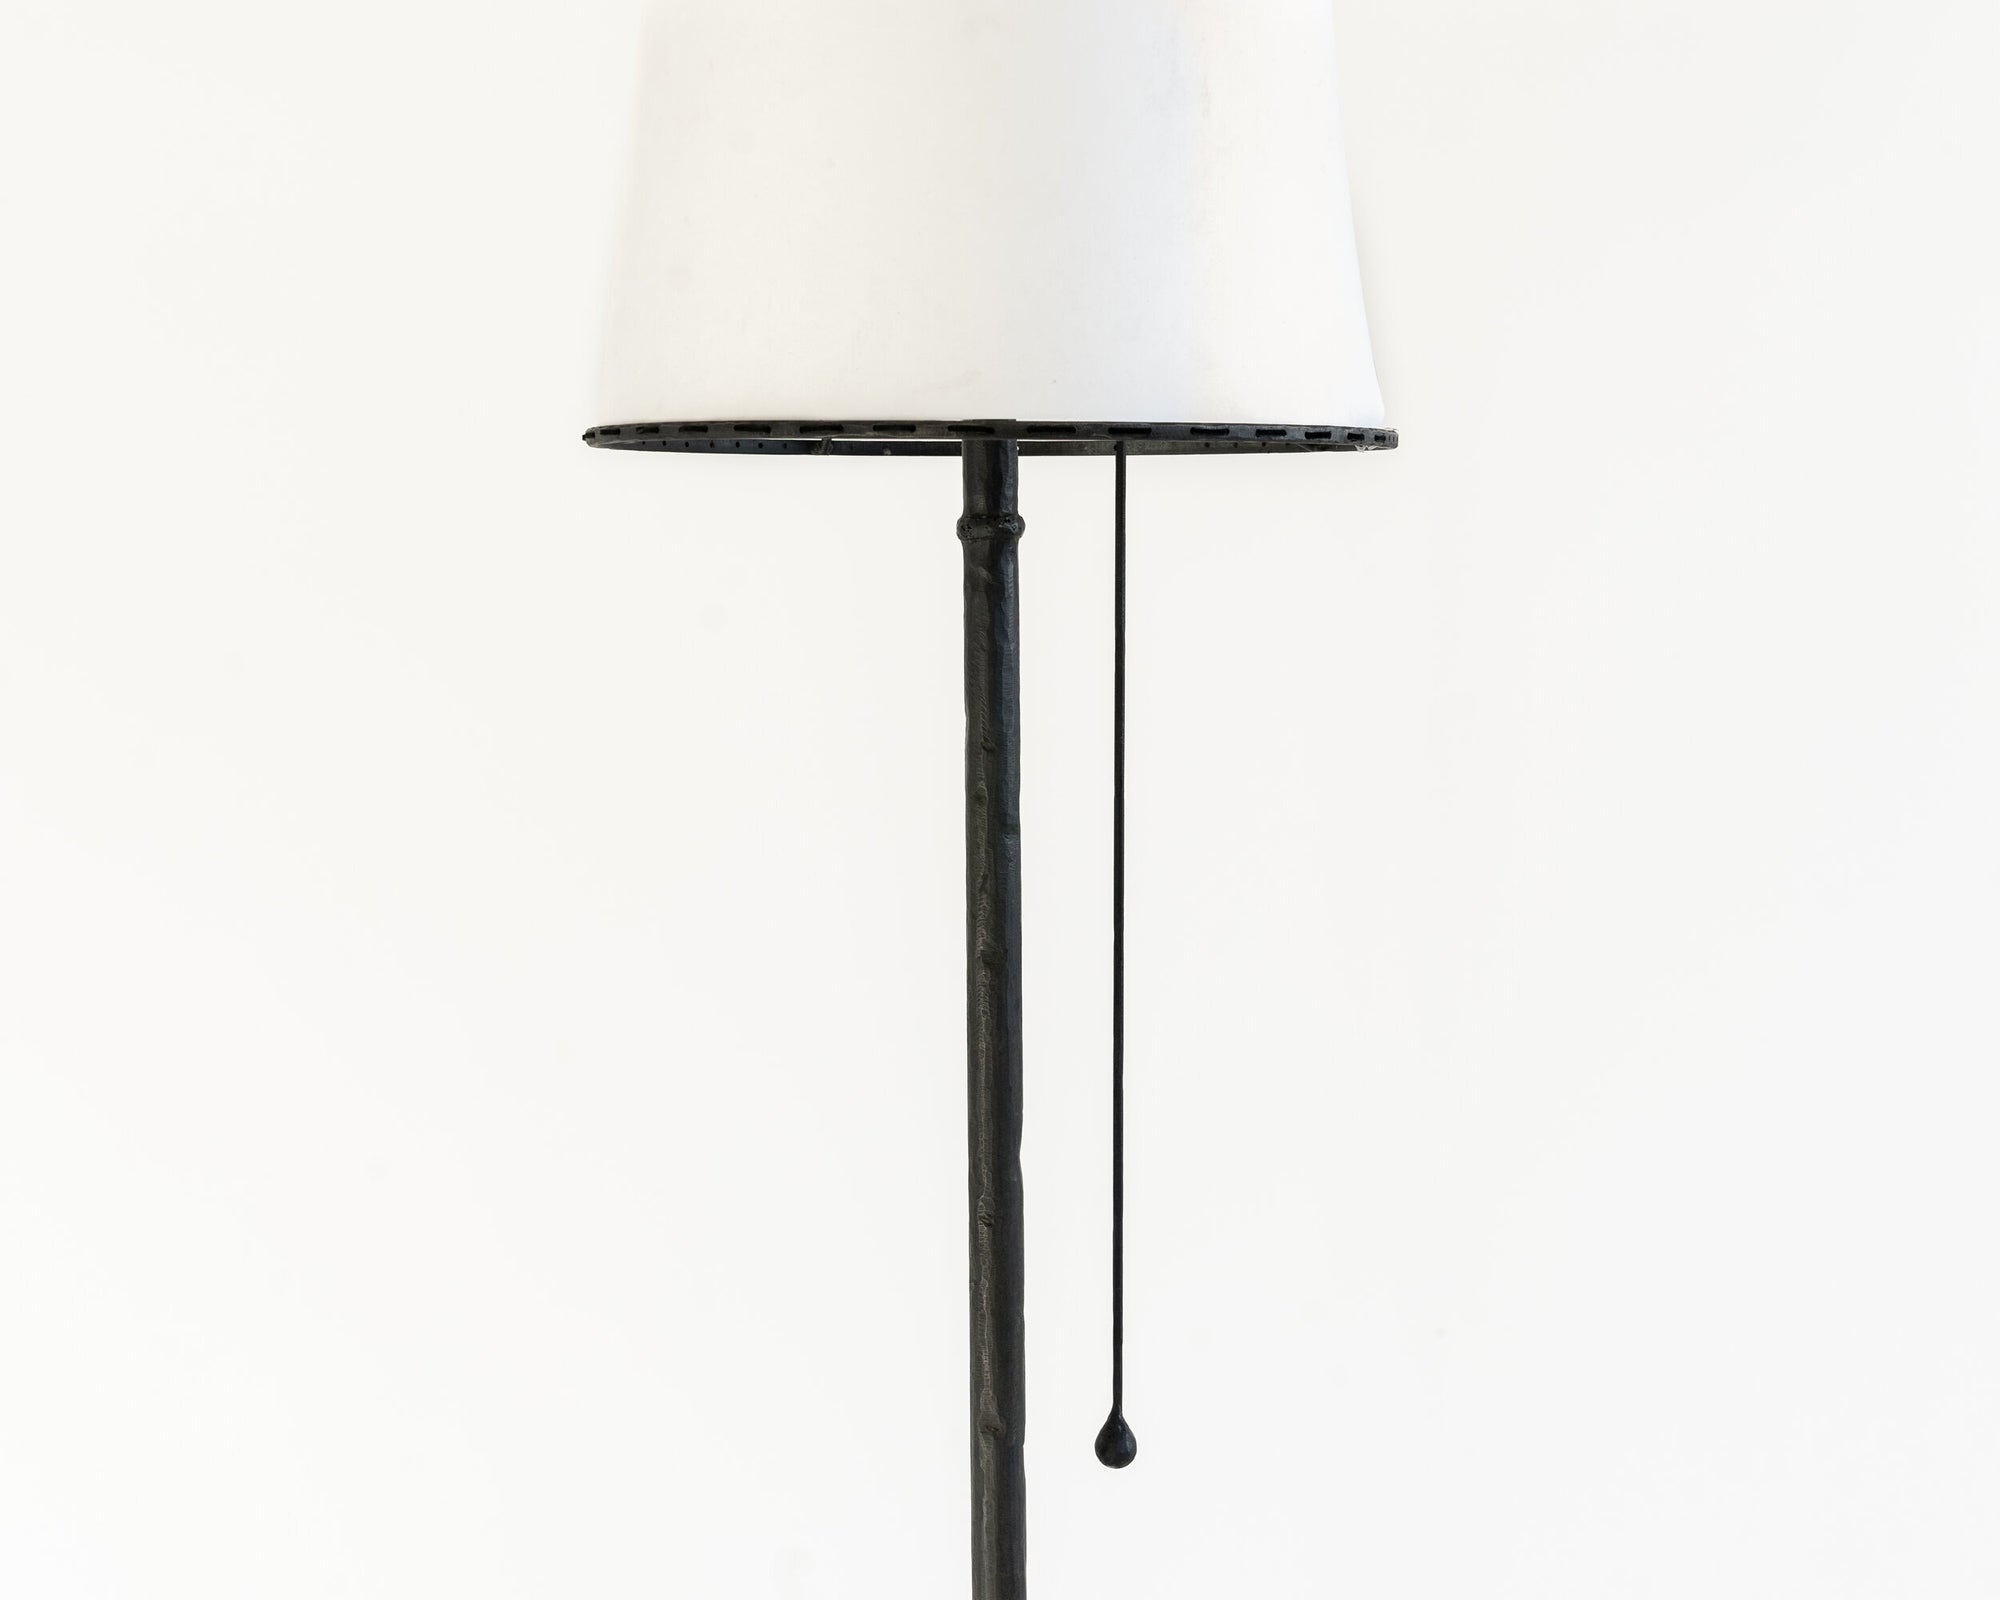 LAMP NO. 1